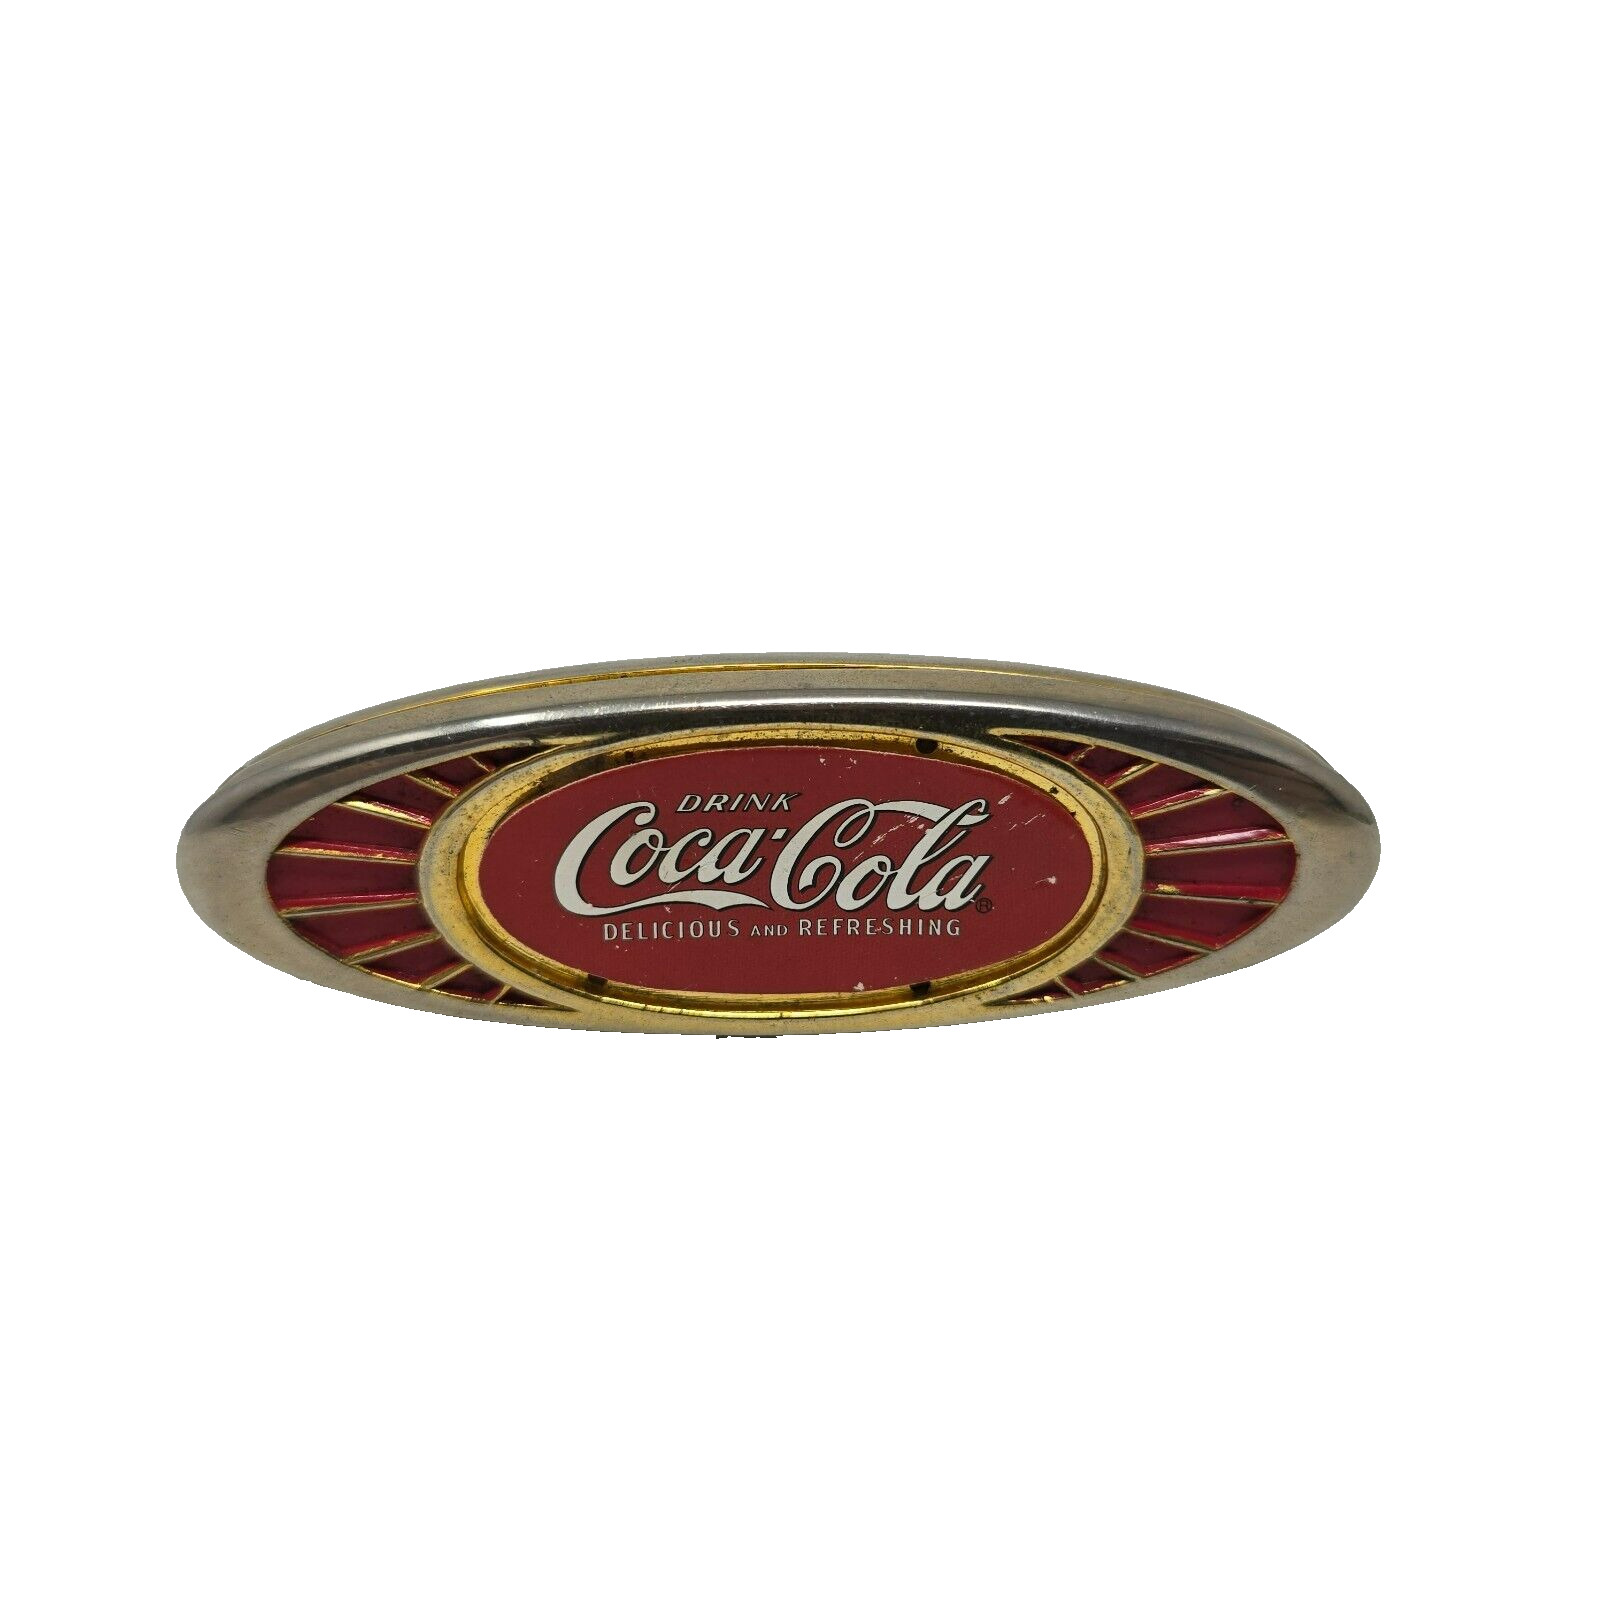 Coca-Cola Franklin Mint Heirloom Collection Series, Pocket Knife Bottle Opener